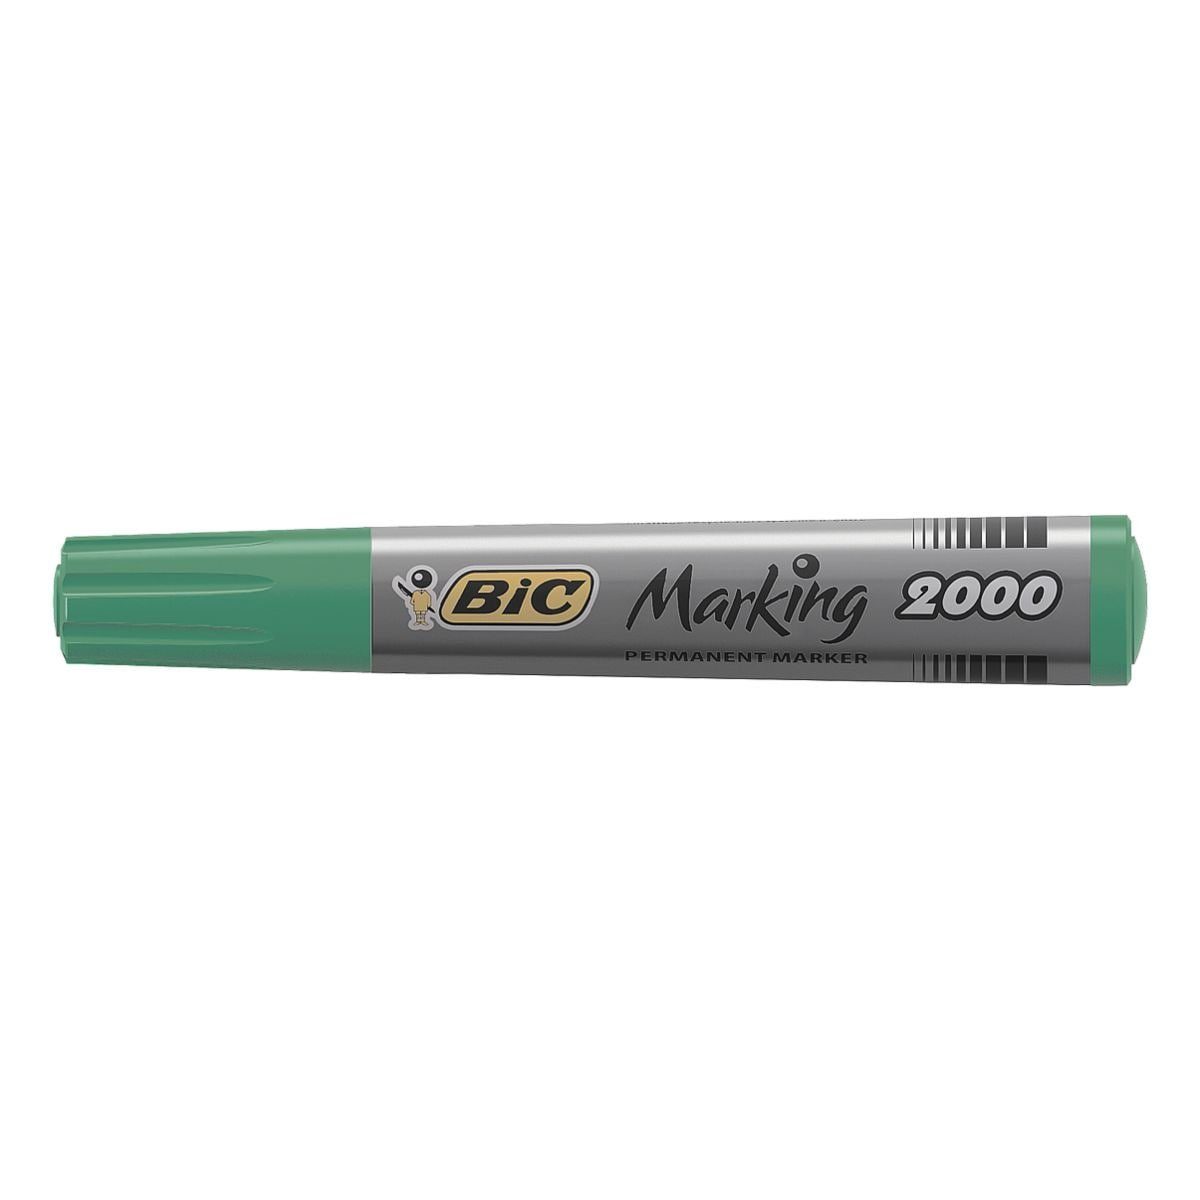 Wochen 2000, (ISO Marking 554): mit Permanentmarker offenlagerfähig BIC grün 3 mind. Austrocknungsschutz